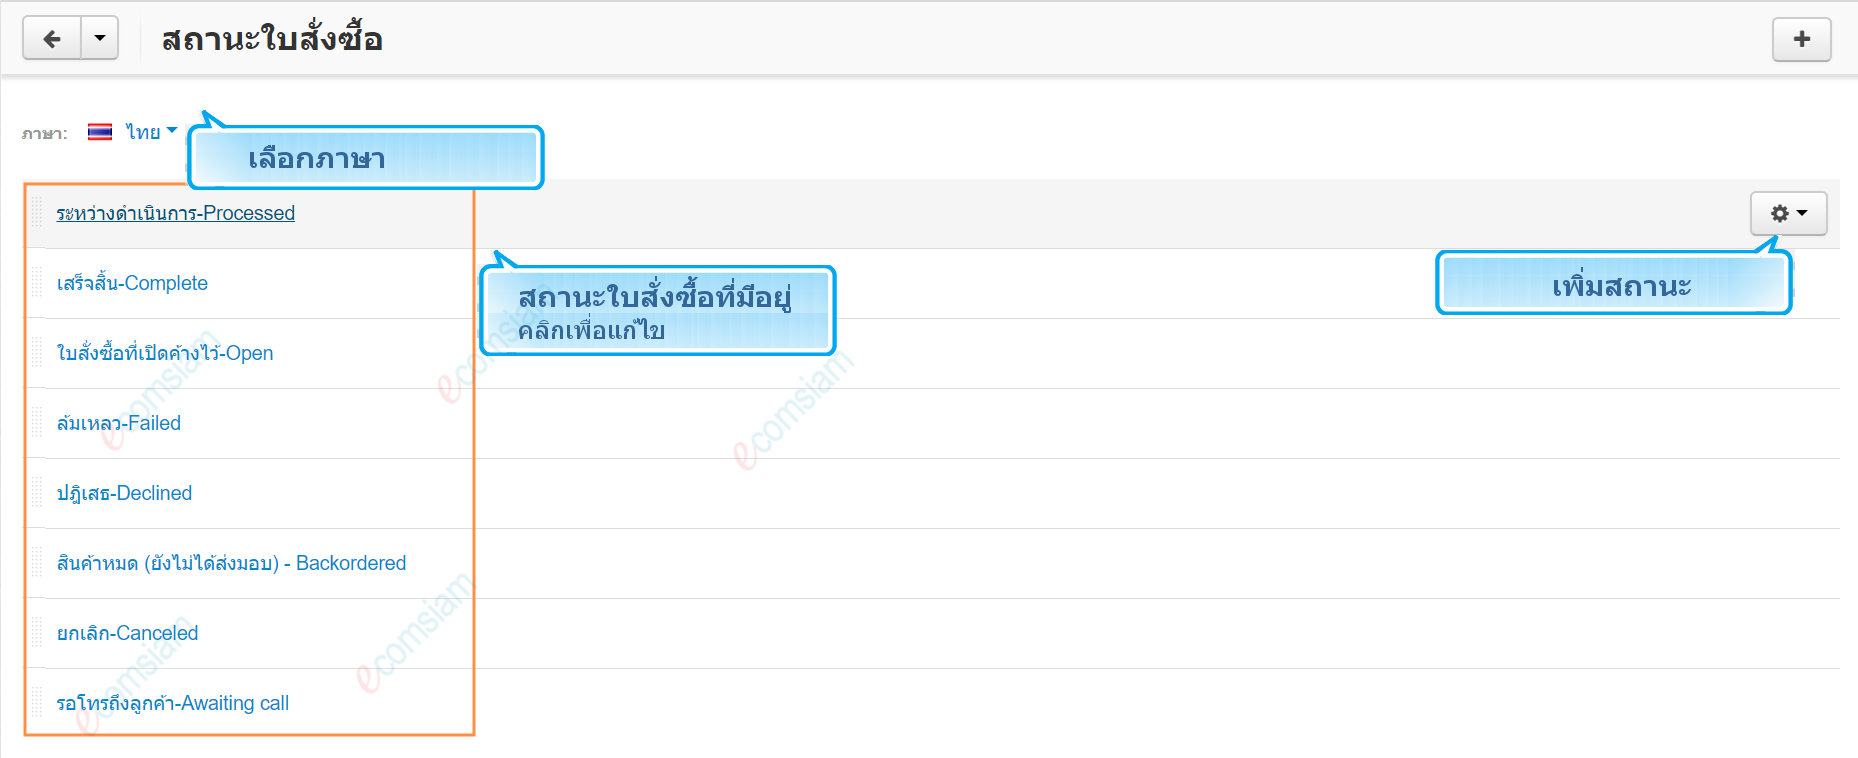 เว็บไซต์สำเร็จรูปไทย - คู่มือร้านออนไลน์ - การจัดการร้านออนไลน์ -สถานะใบสั่งซื้อ order status